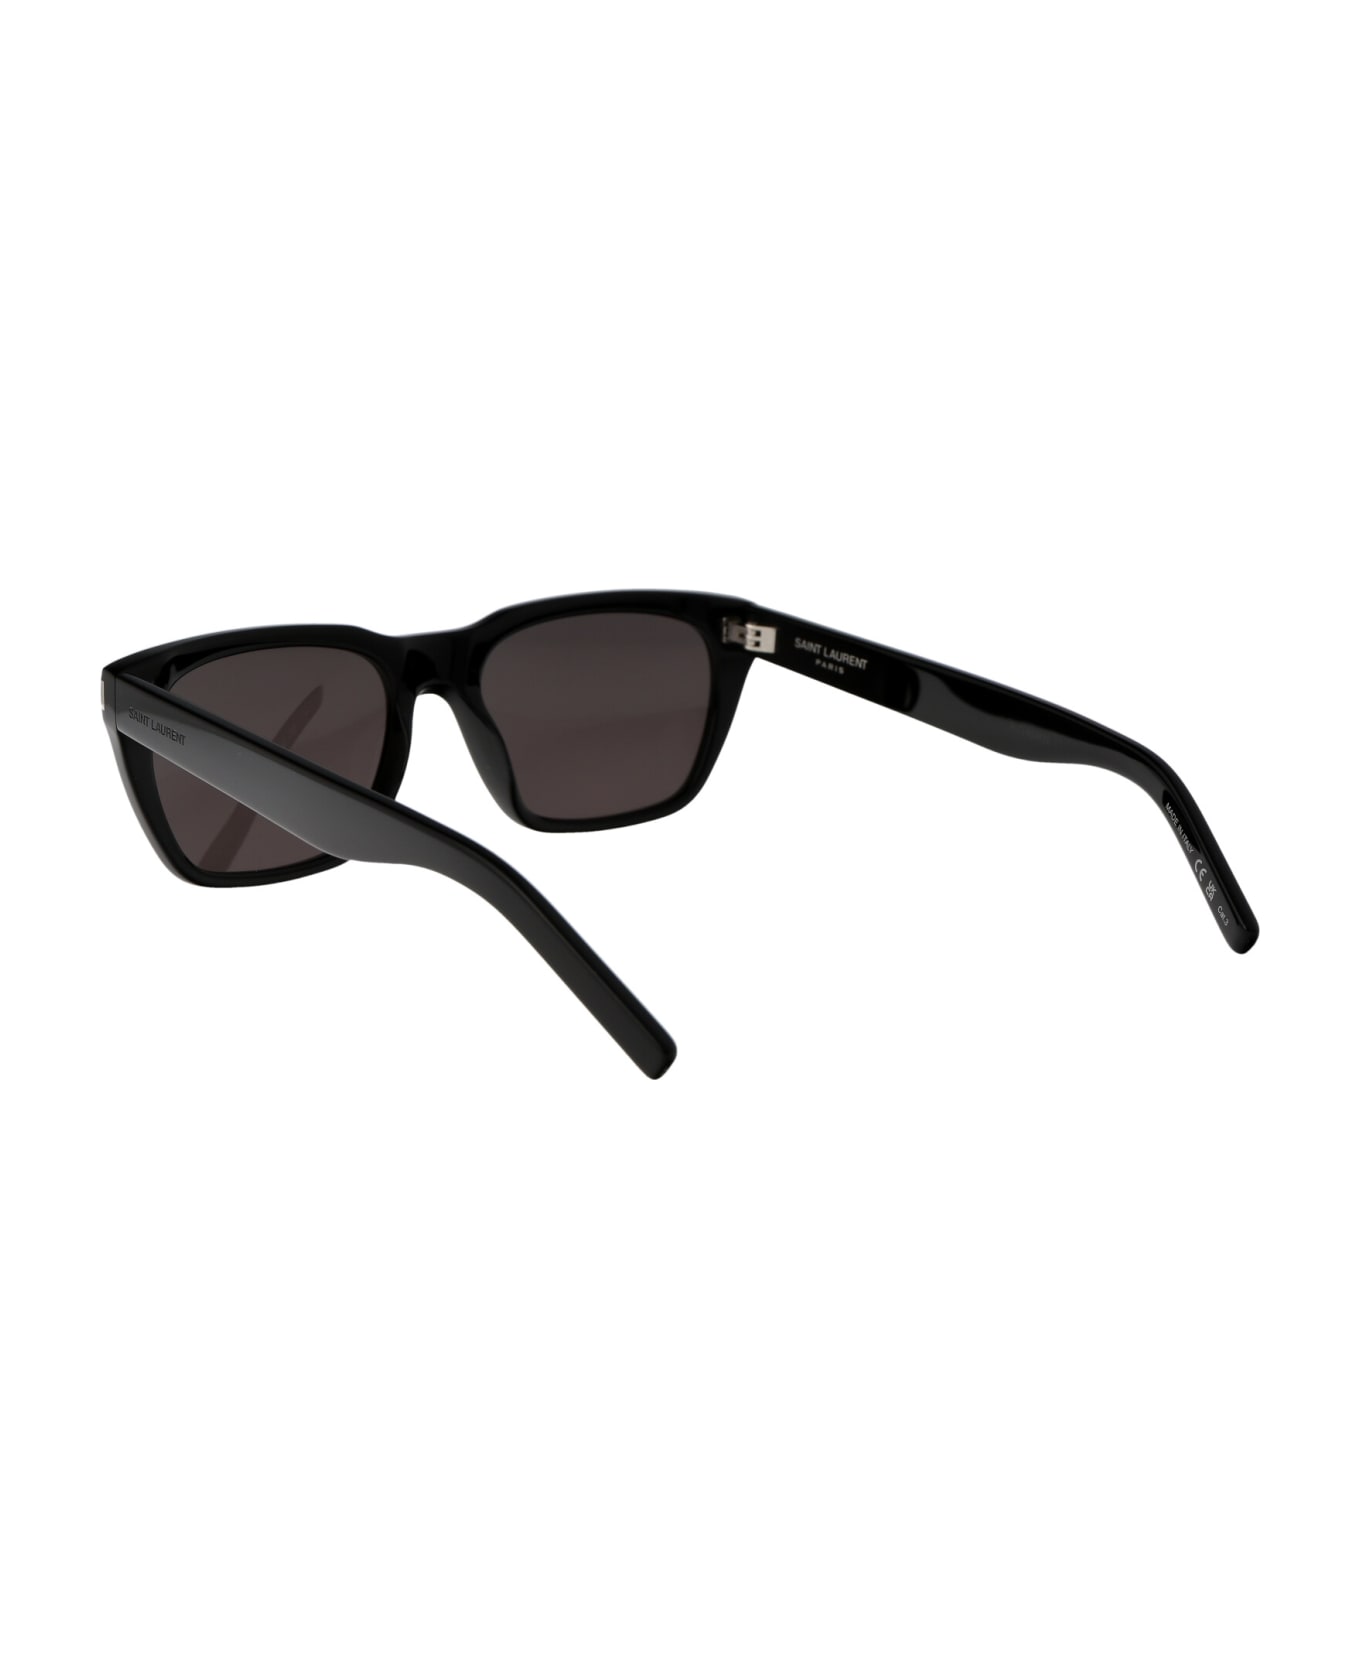 Saint Laurent Eyewear Sl 598 Sunglasses - 001 BLACK BLACK BLACK